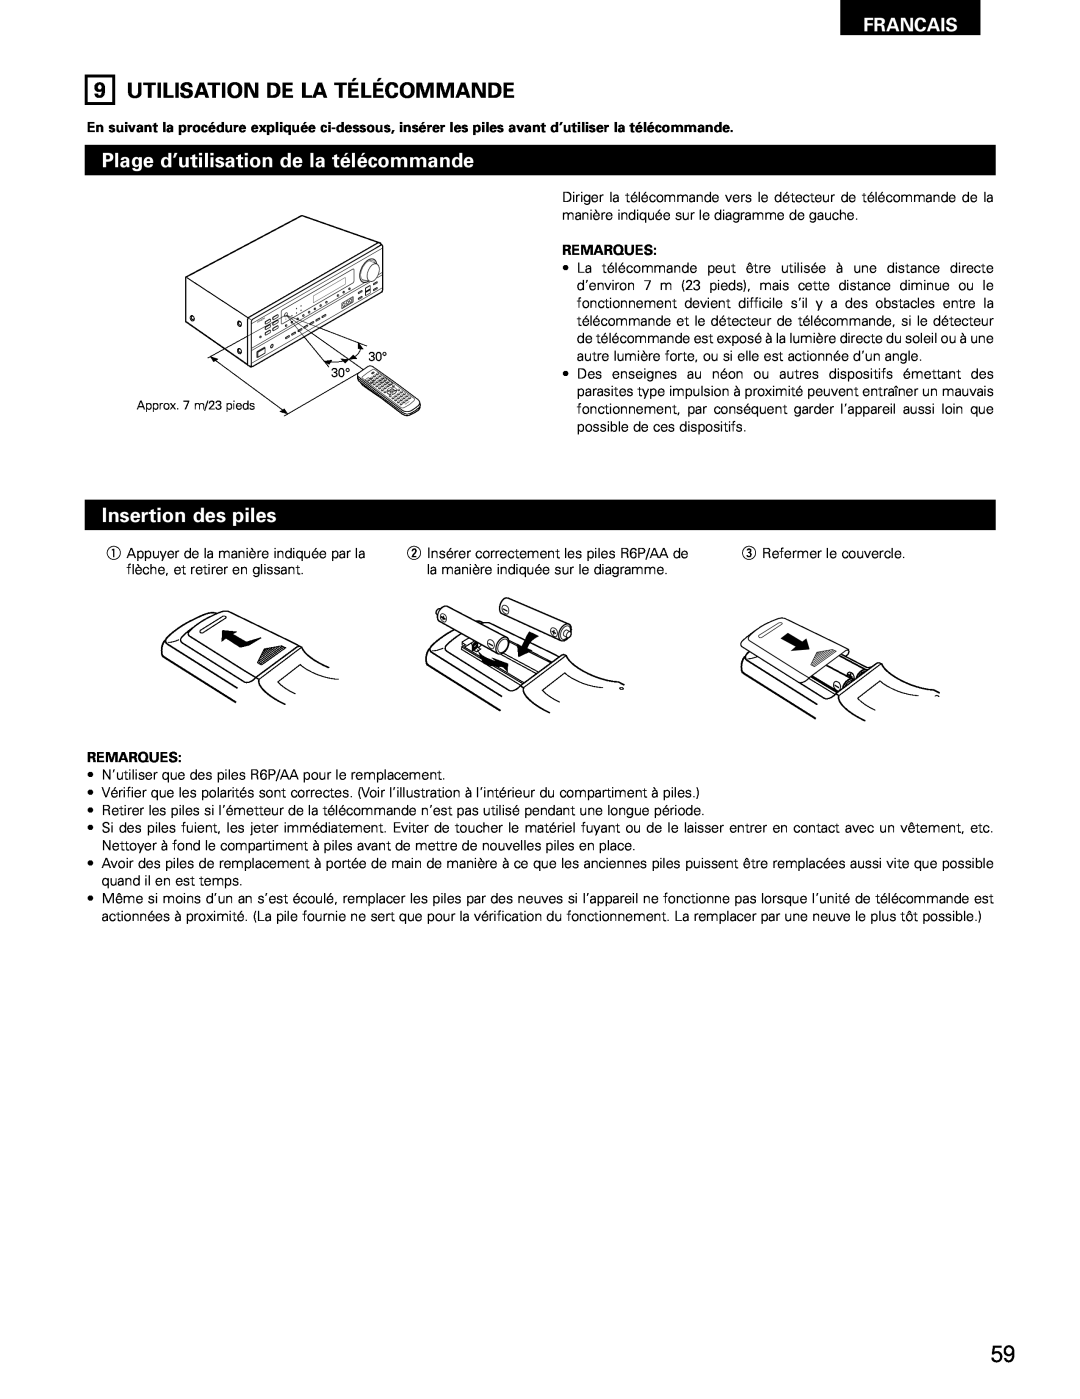 Denon AVR-682 manual Utilisation De La Télécommande, Plage d’utilisation de la télécommande, Insertion des piles, Francais 